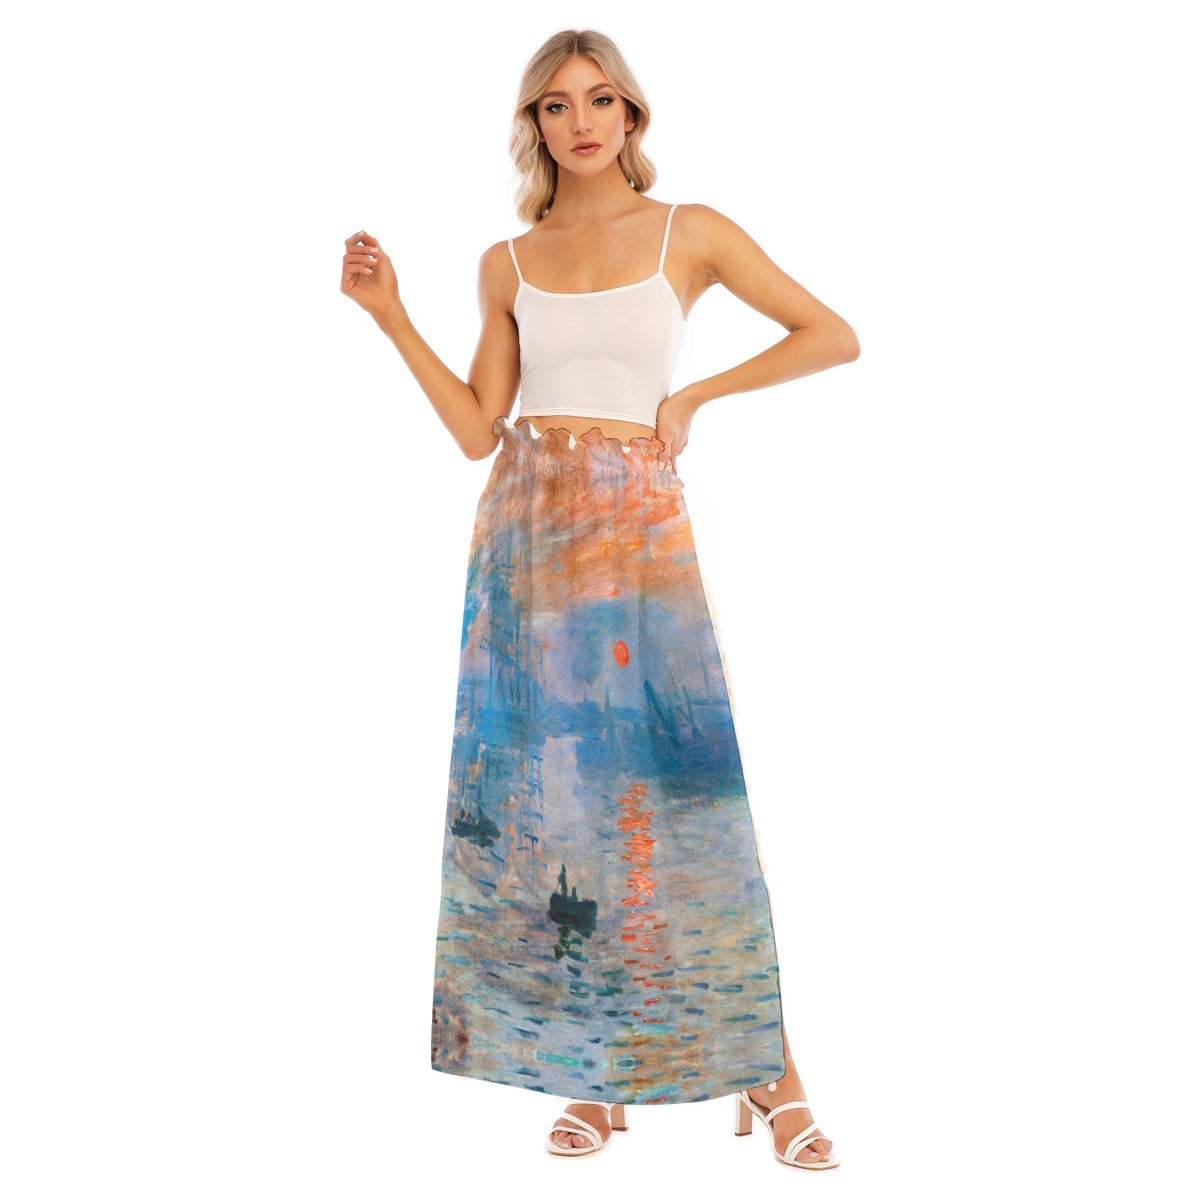 Ethereal side split skirt with impressionist design